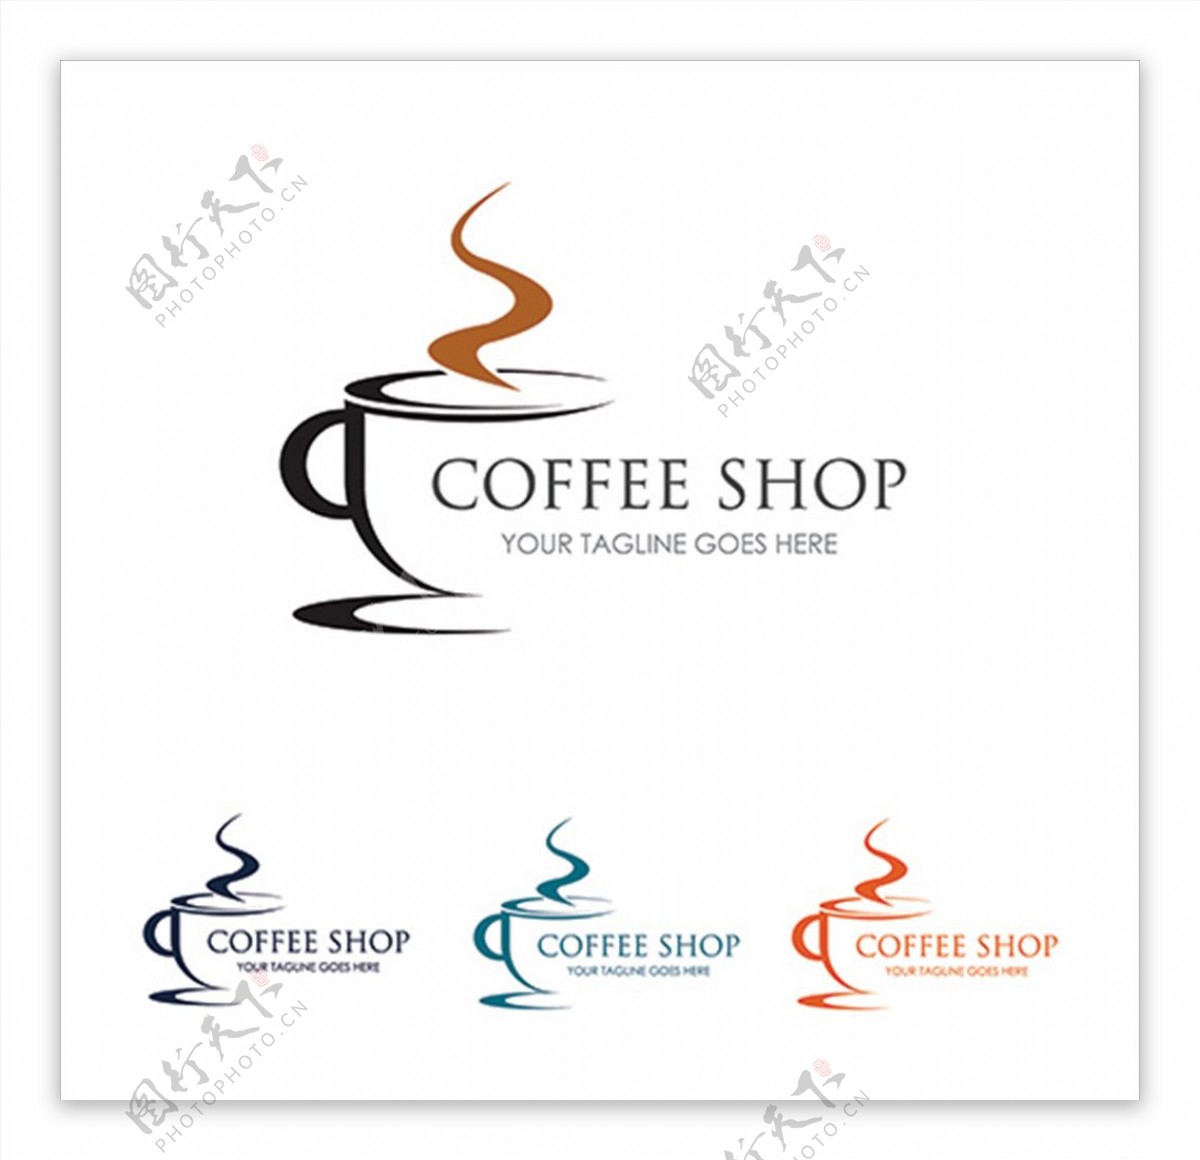 咖啡店铺标志